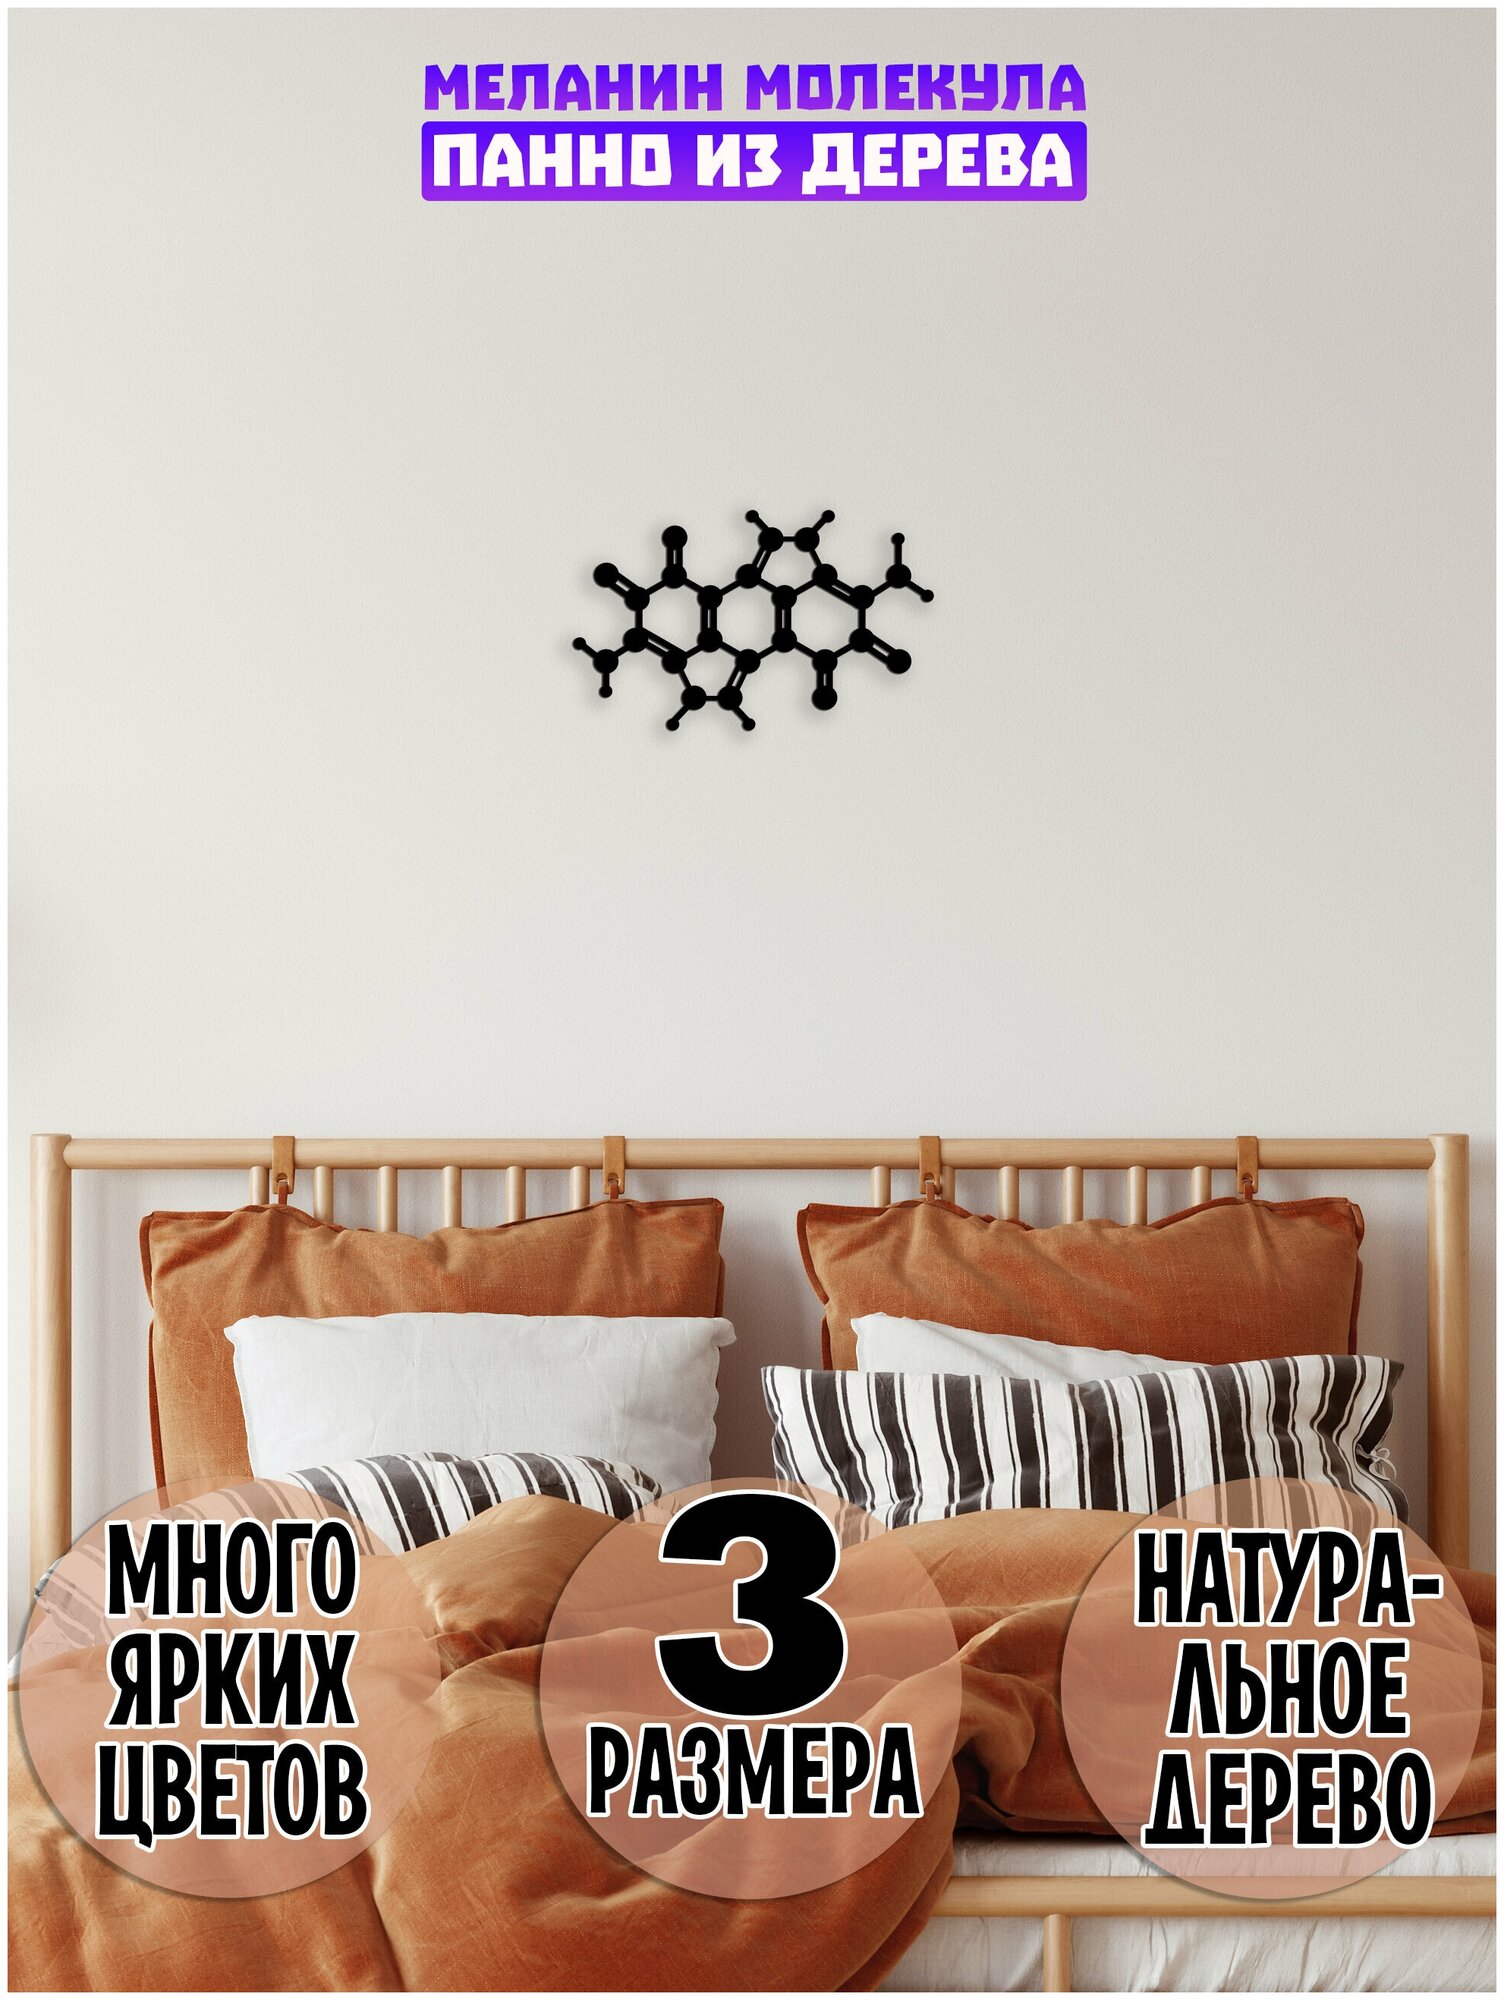 Декор на стену "Меланин", декорация настенная, панно из дерева (Химическая формула, молекула)